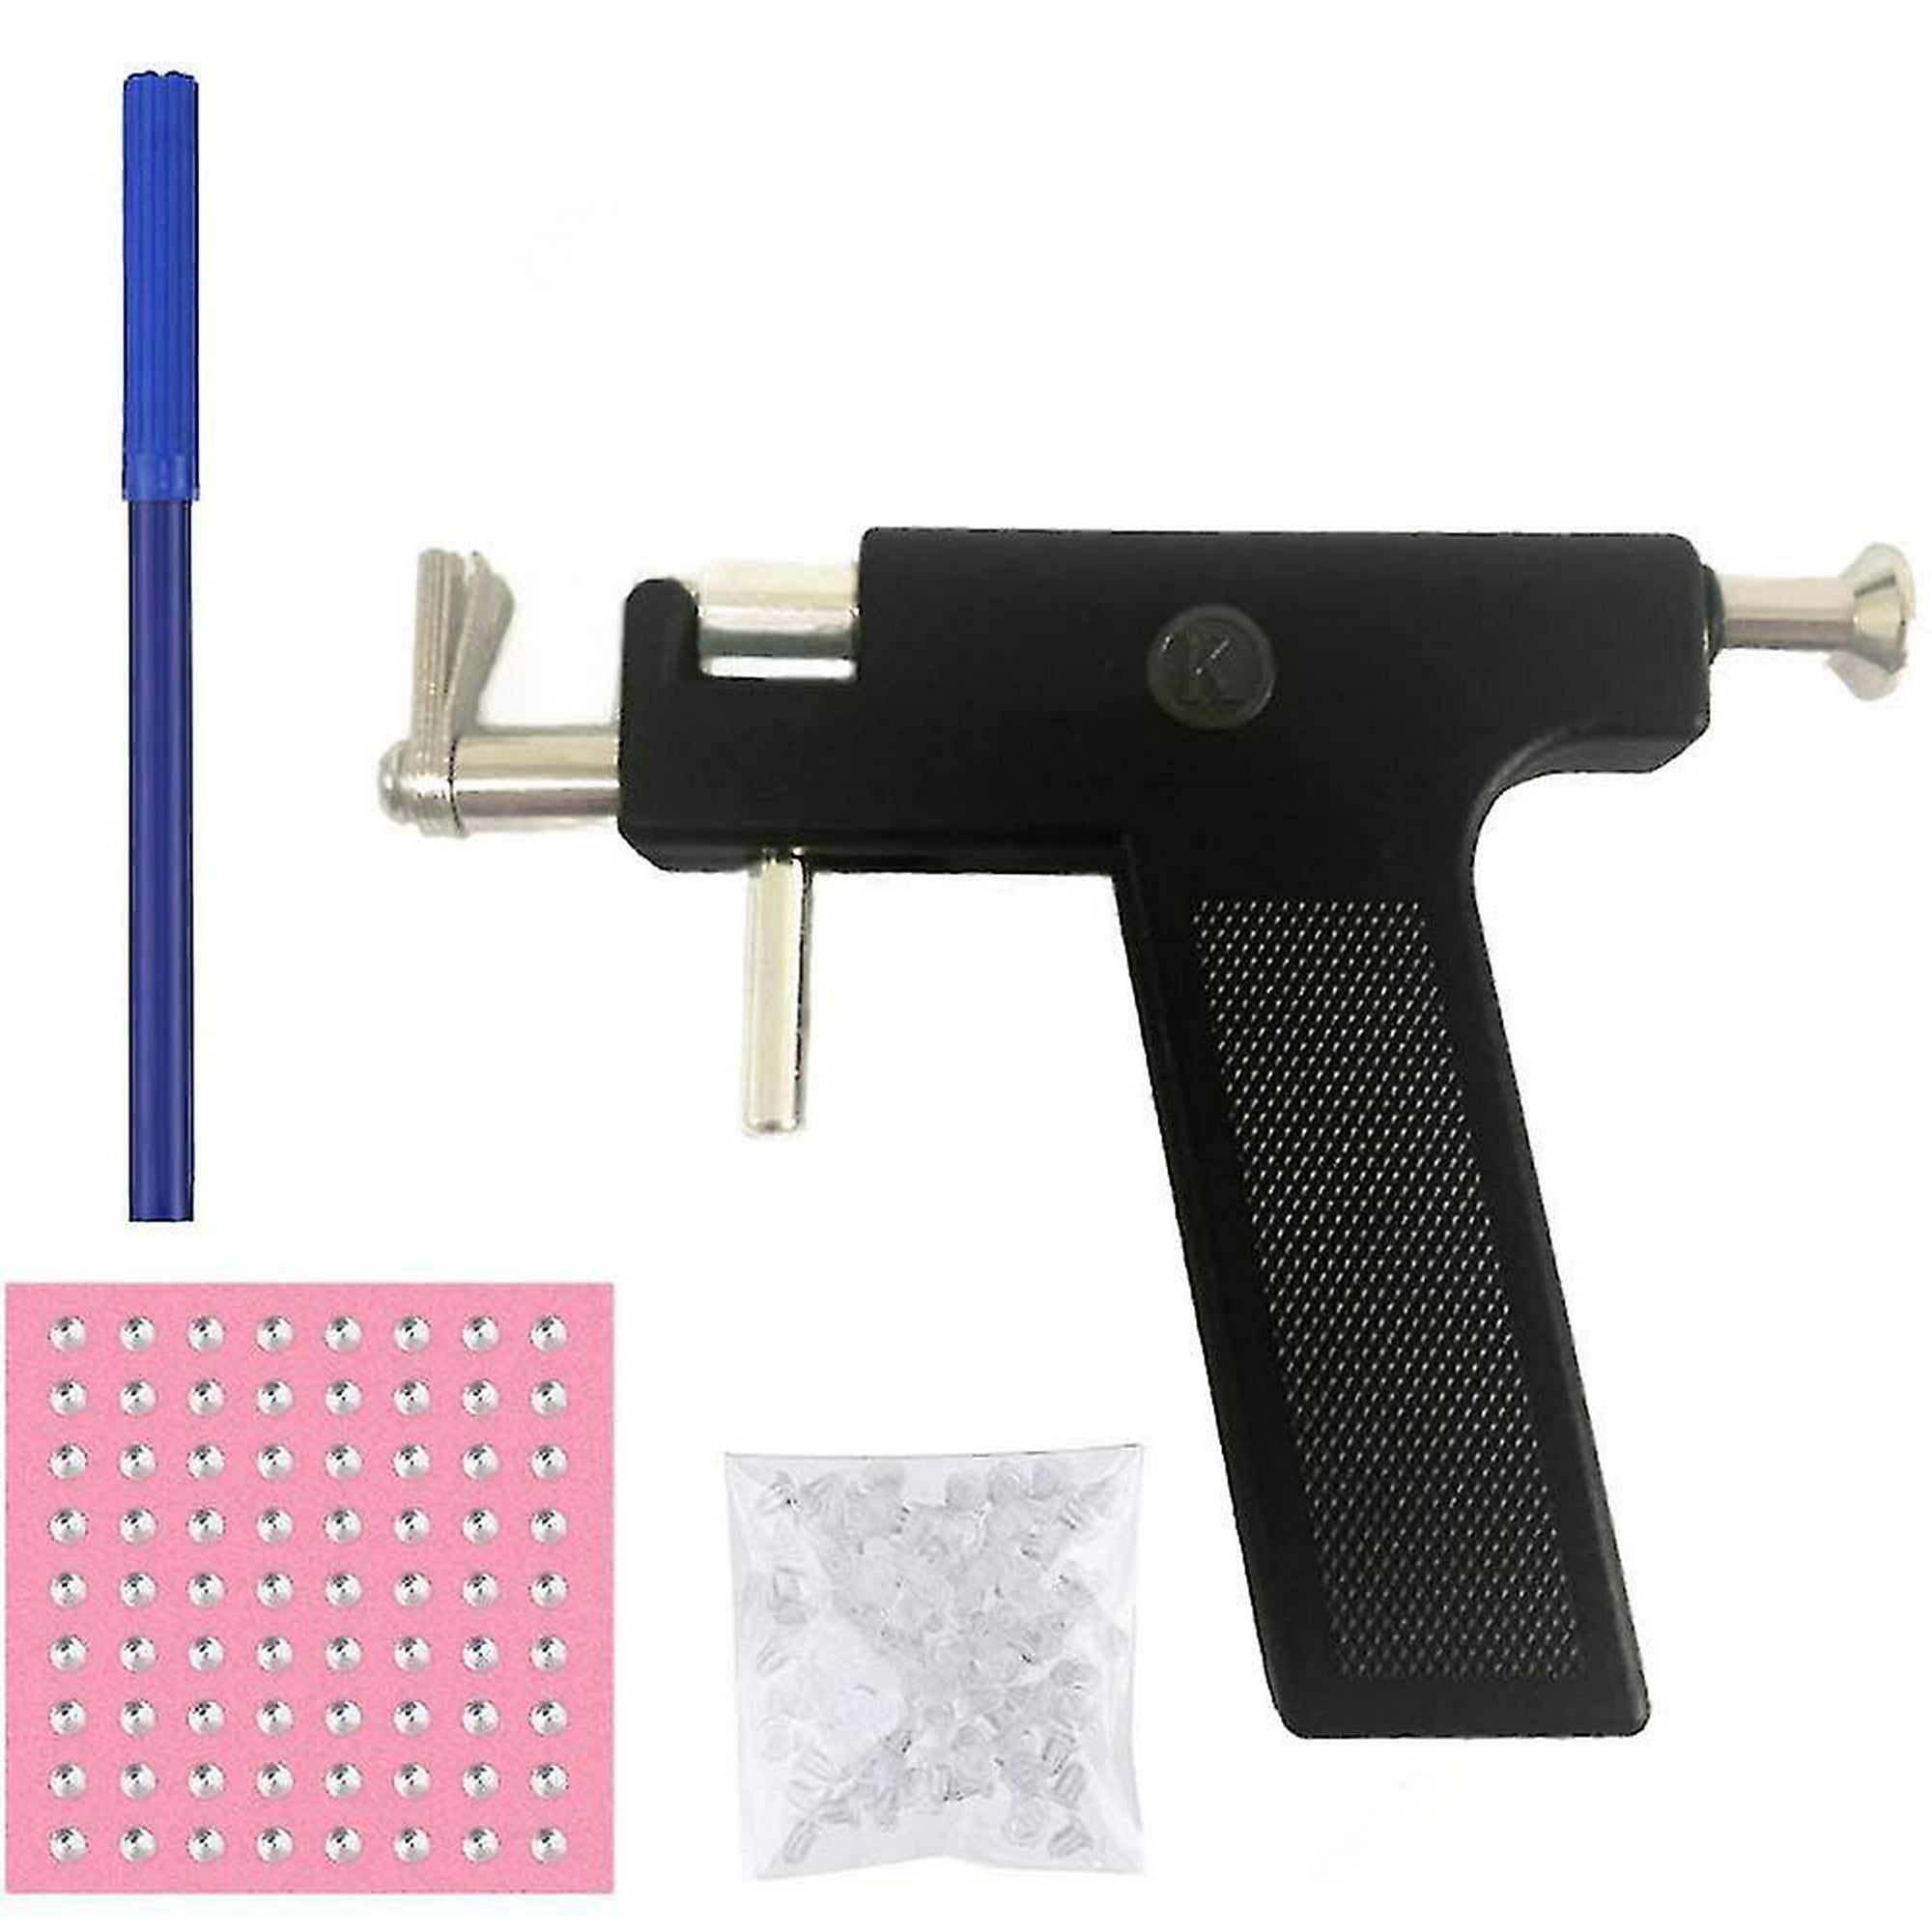 Kit profesional de pistola de perforación de oreja de acero inoxidable, kit  de herramientas de perforación de oreja para nariz, ombligo, con 48 pares